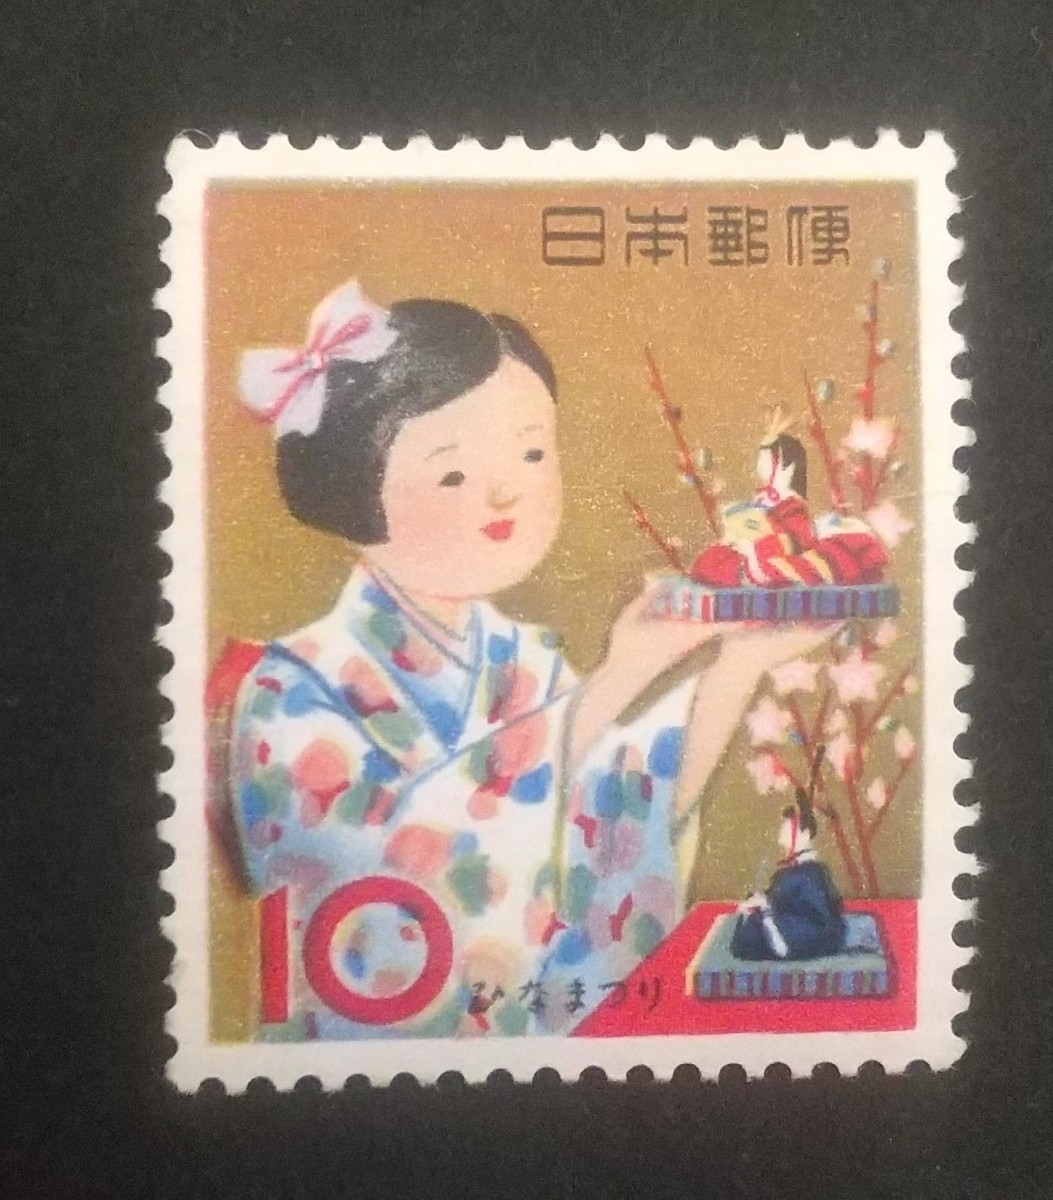 記念切手 年中行事シリーズ ひなまつり未使用品 (ST-TG)の画像1